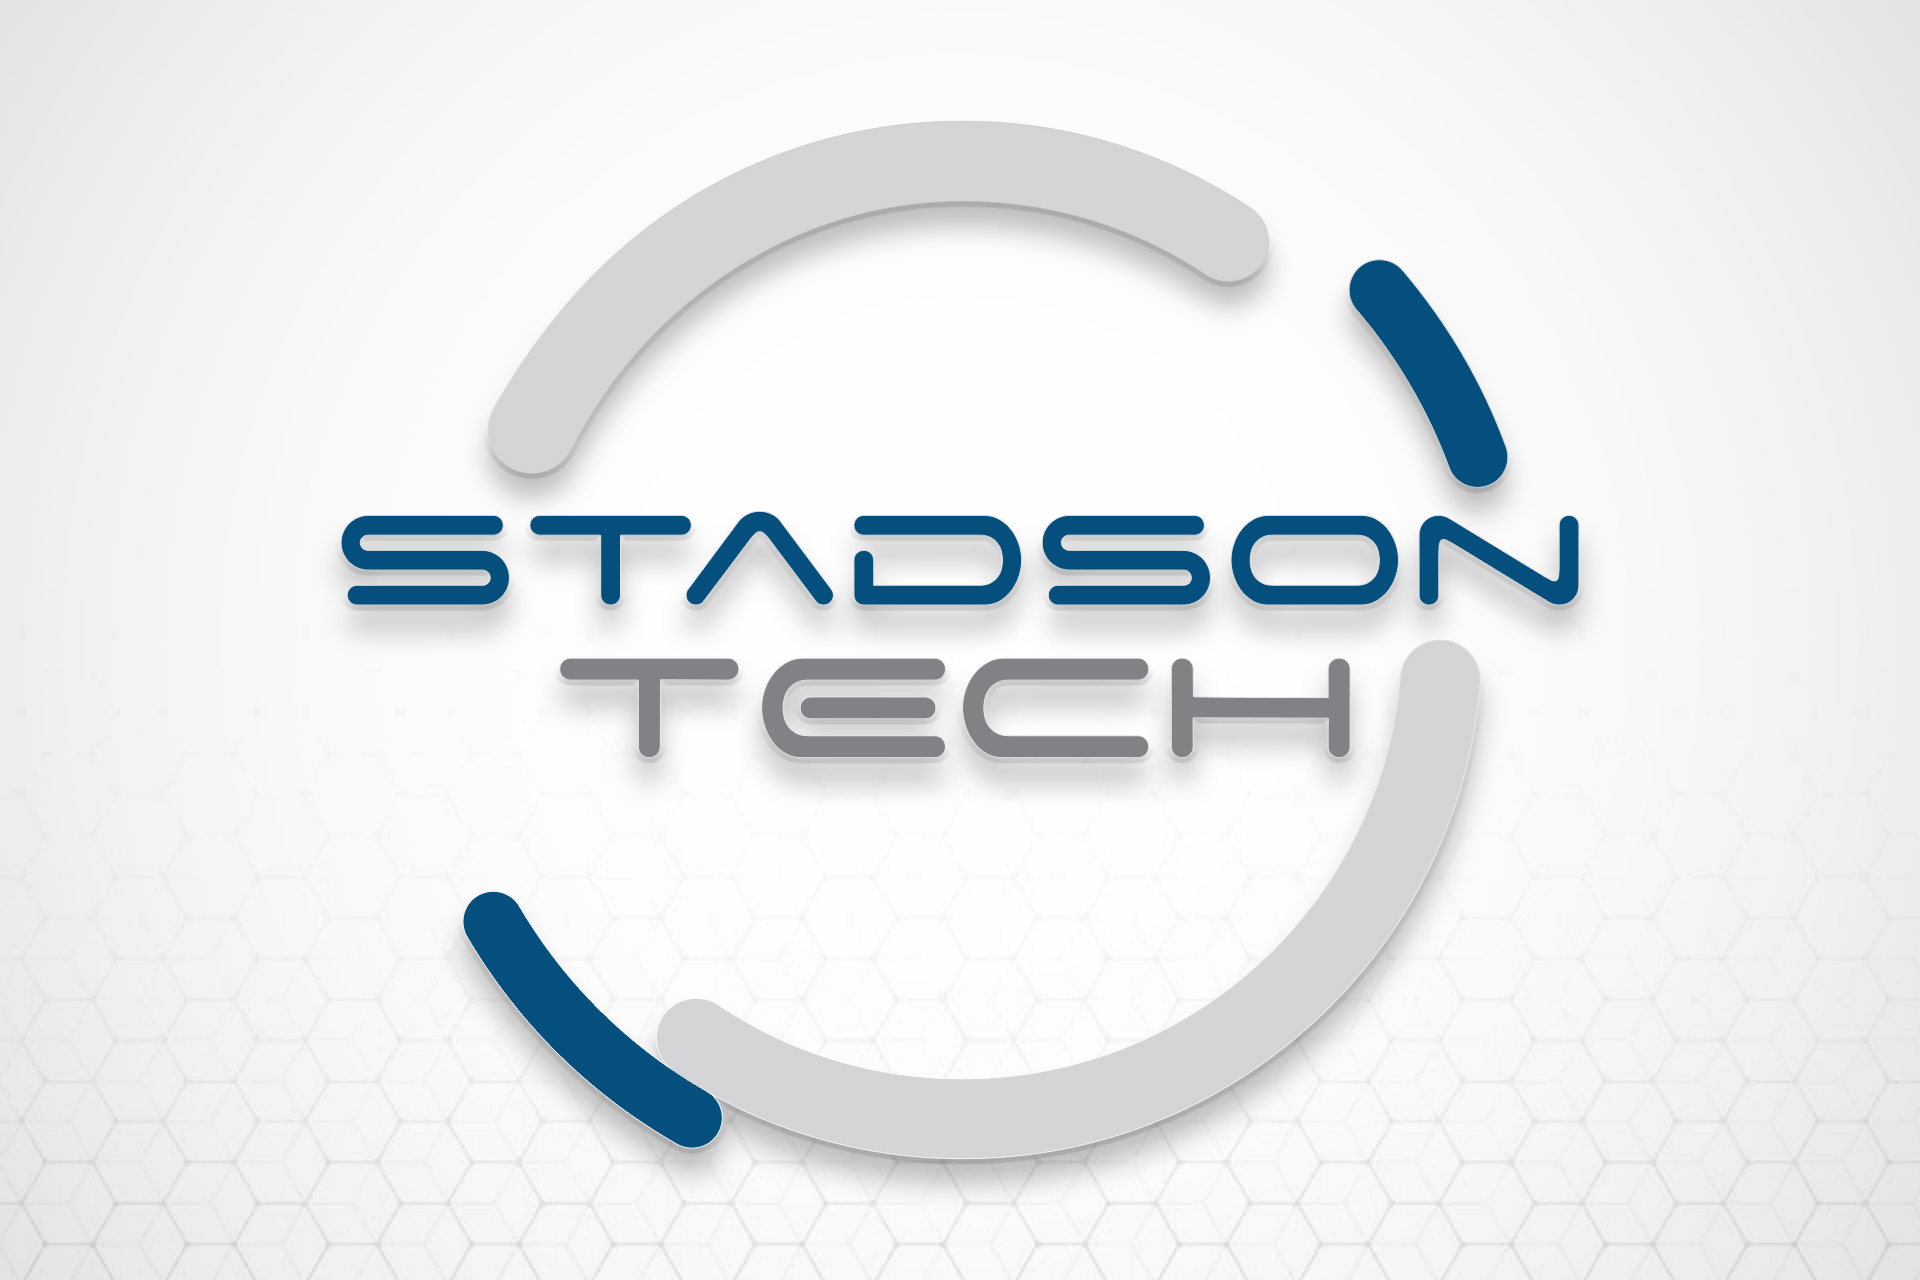 Stadson | Logo Design